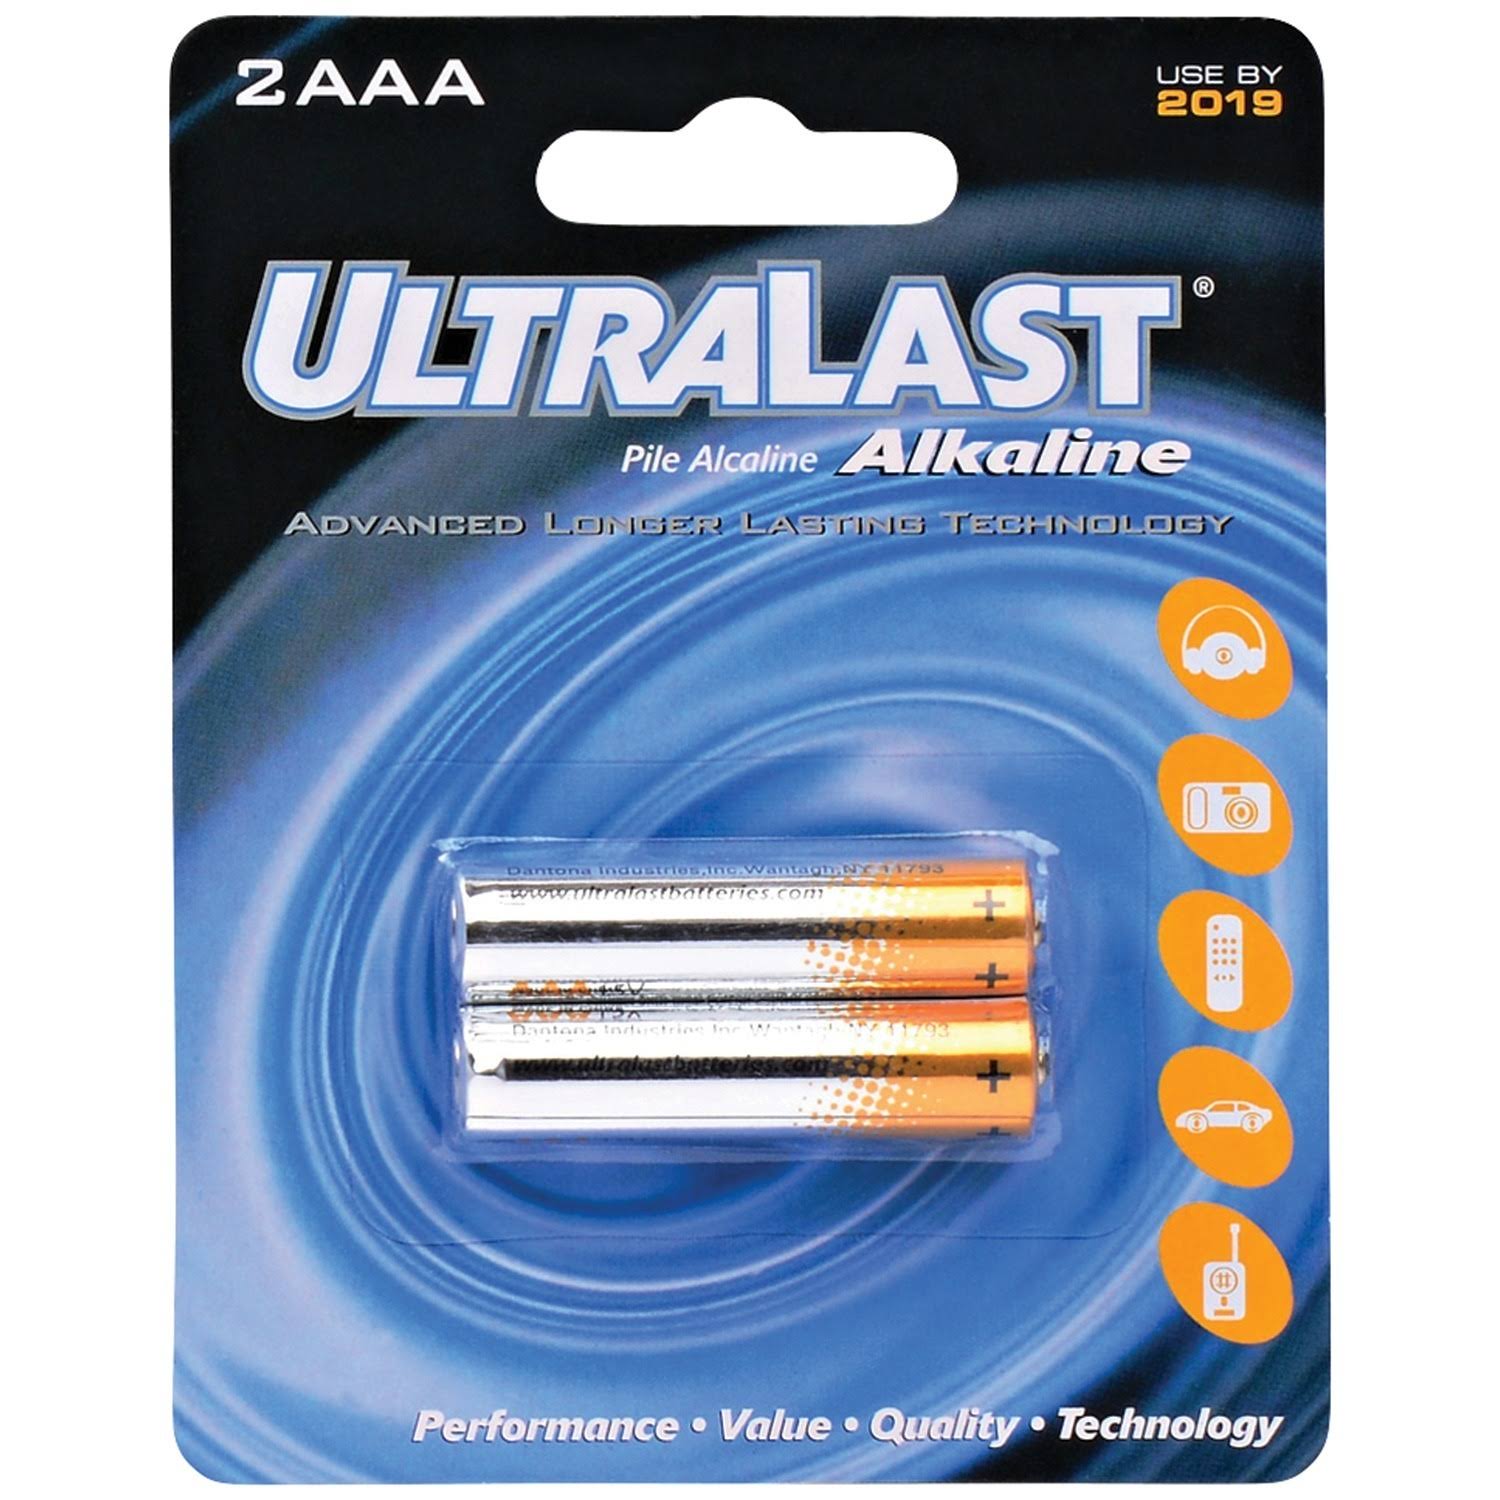 Ultralast Alkaline Battery - x2, AAA